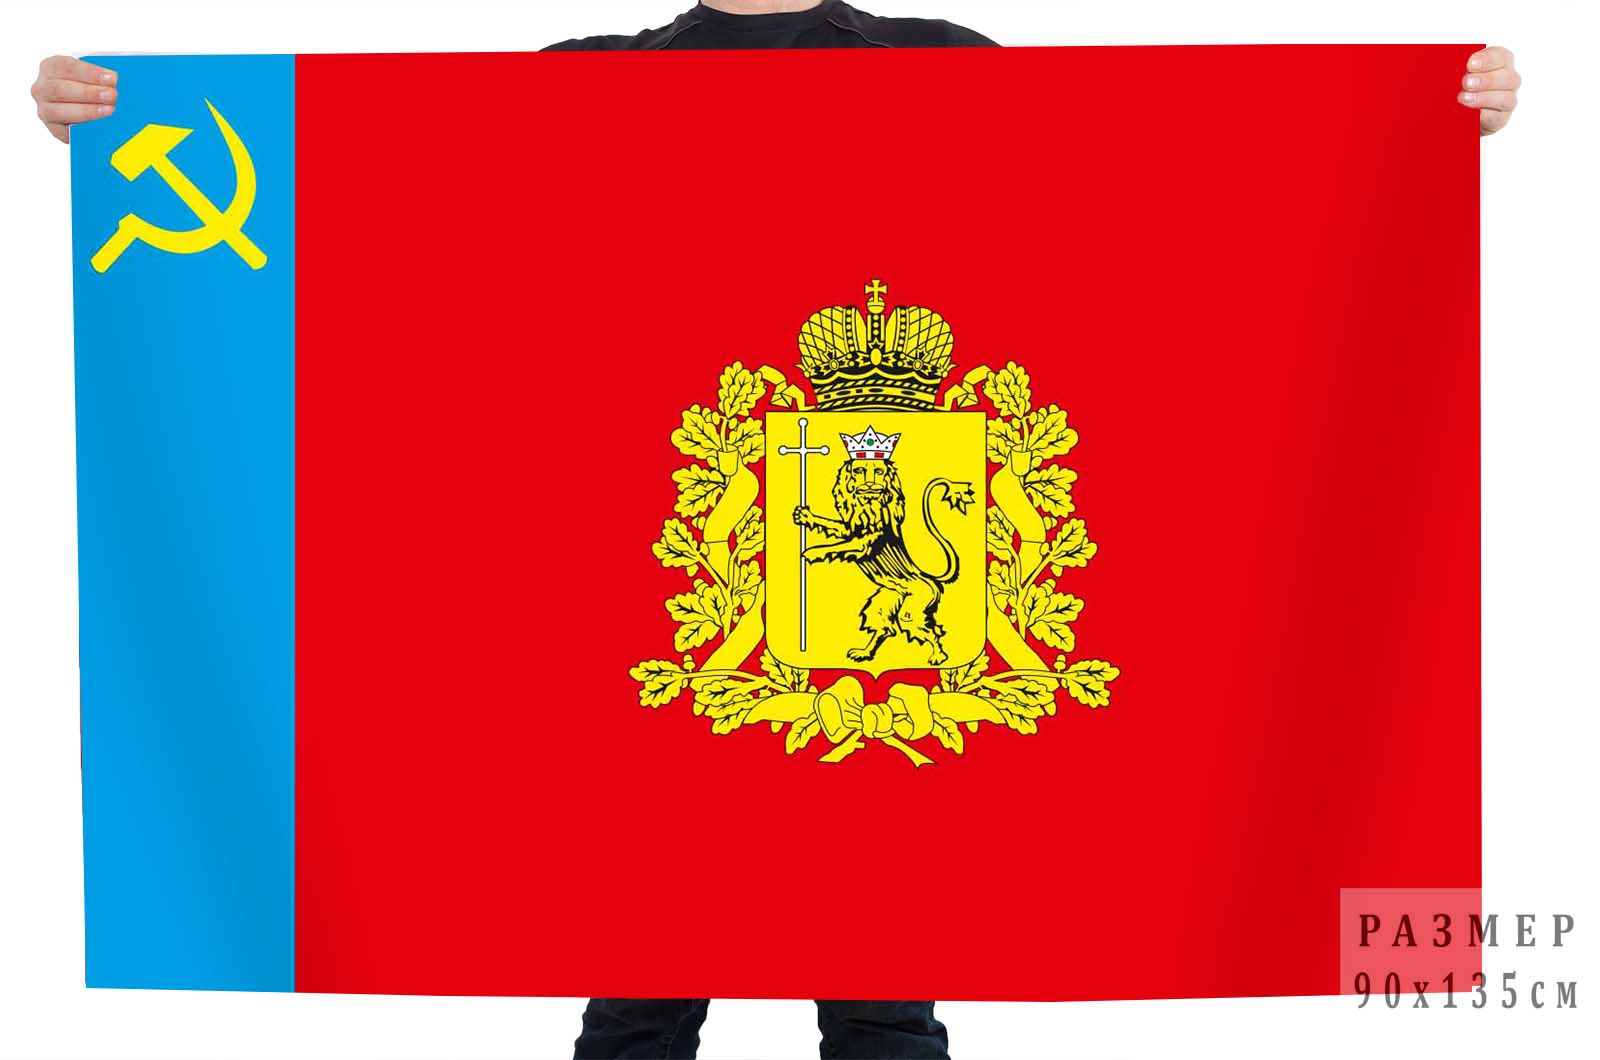 Флаг Владимирской области